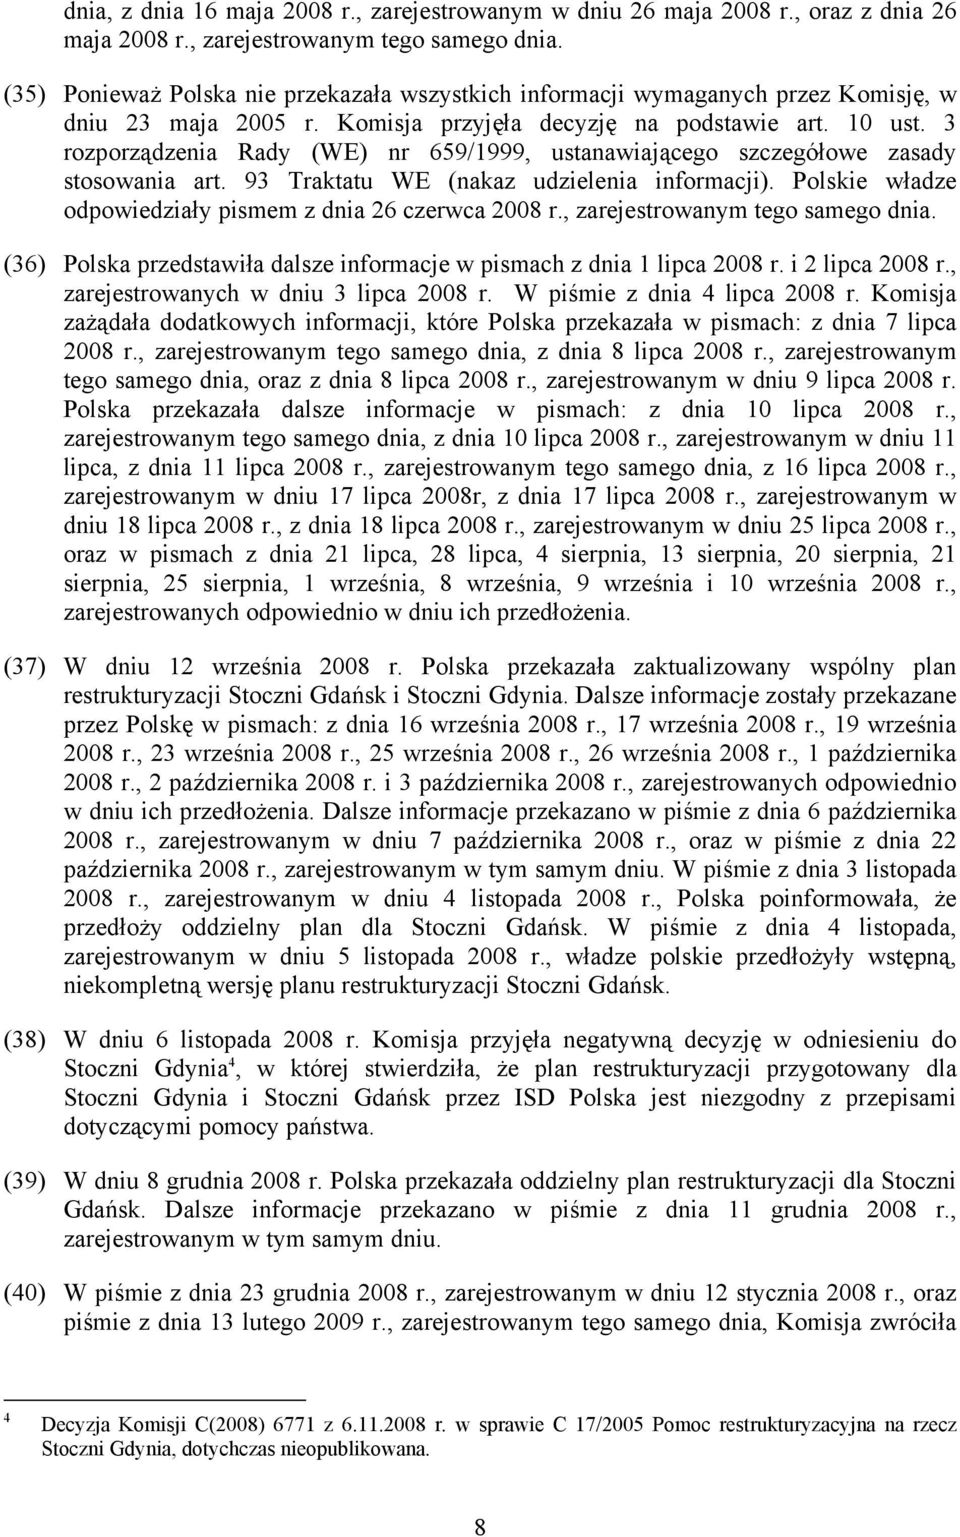 3 rozporządzenia Rady (WE) nr 659/1999, ustanawiającego szczegółowe zasady stosowania art. 93 Traktatu WE (nakaz udzielenia informacji). Polskie władze odpowiedziały pismem z dnia 26 czerwca 2008 r.